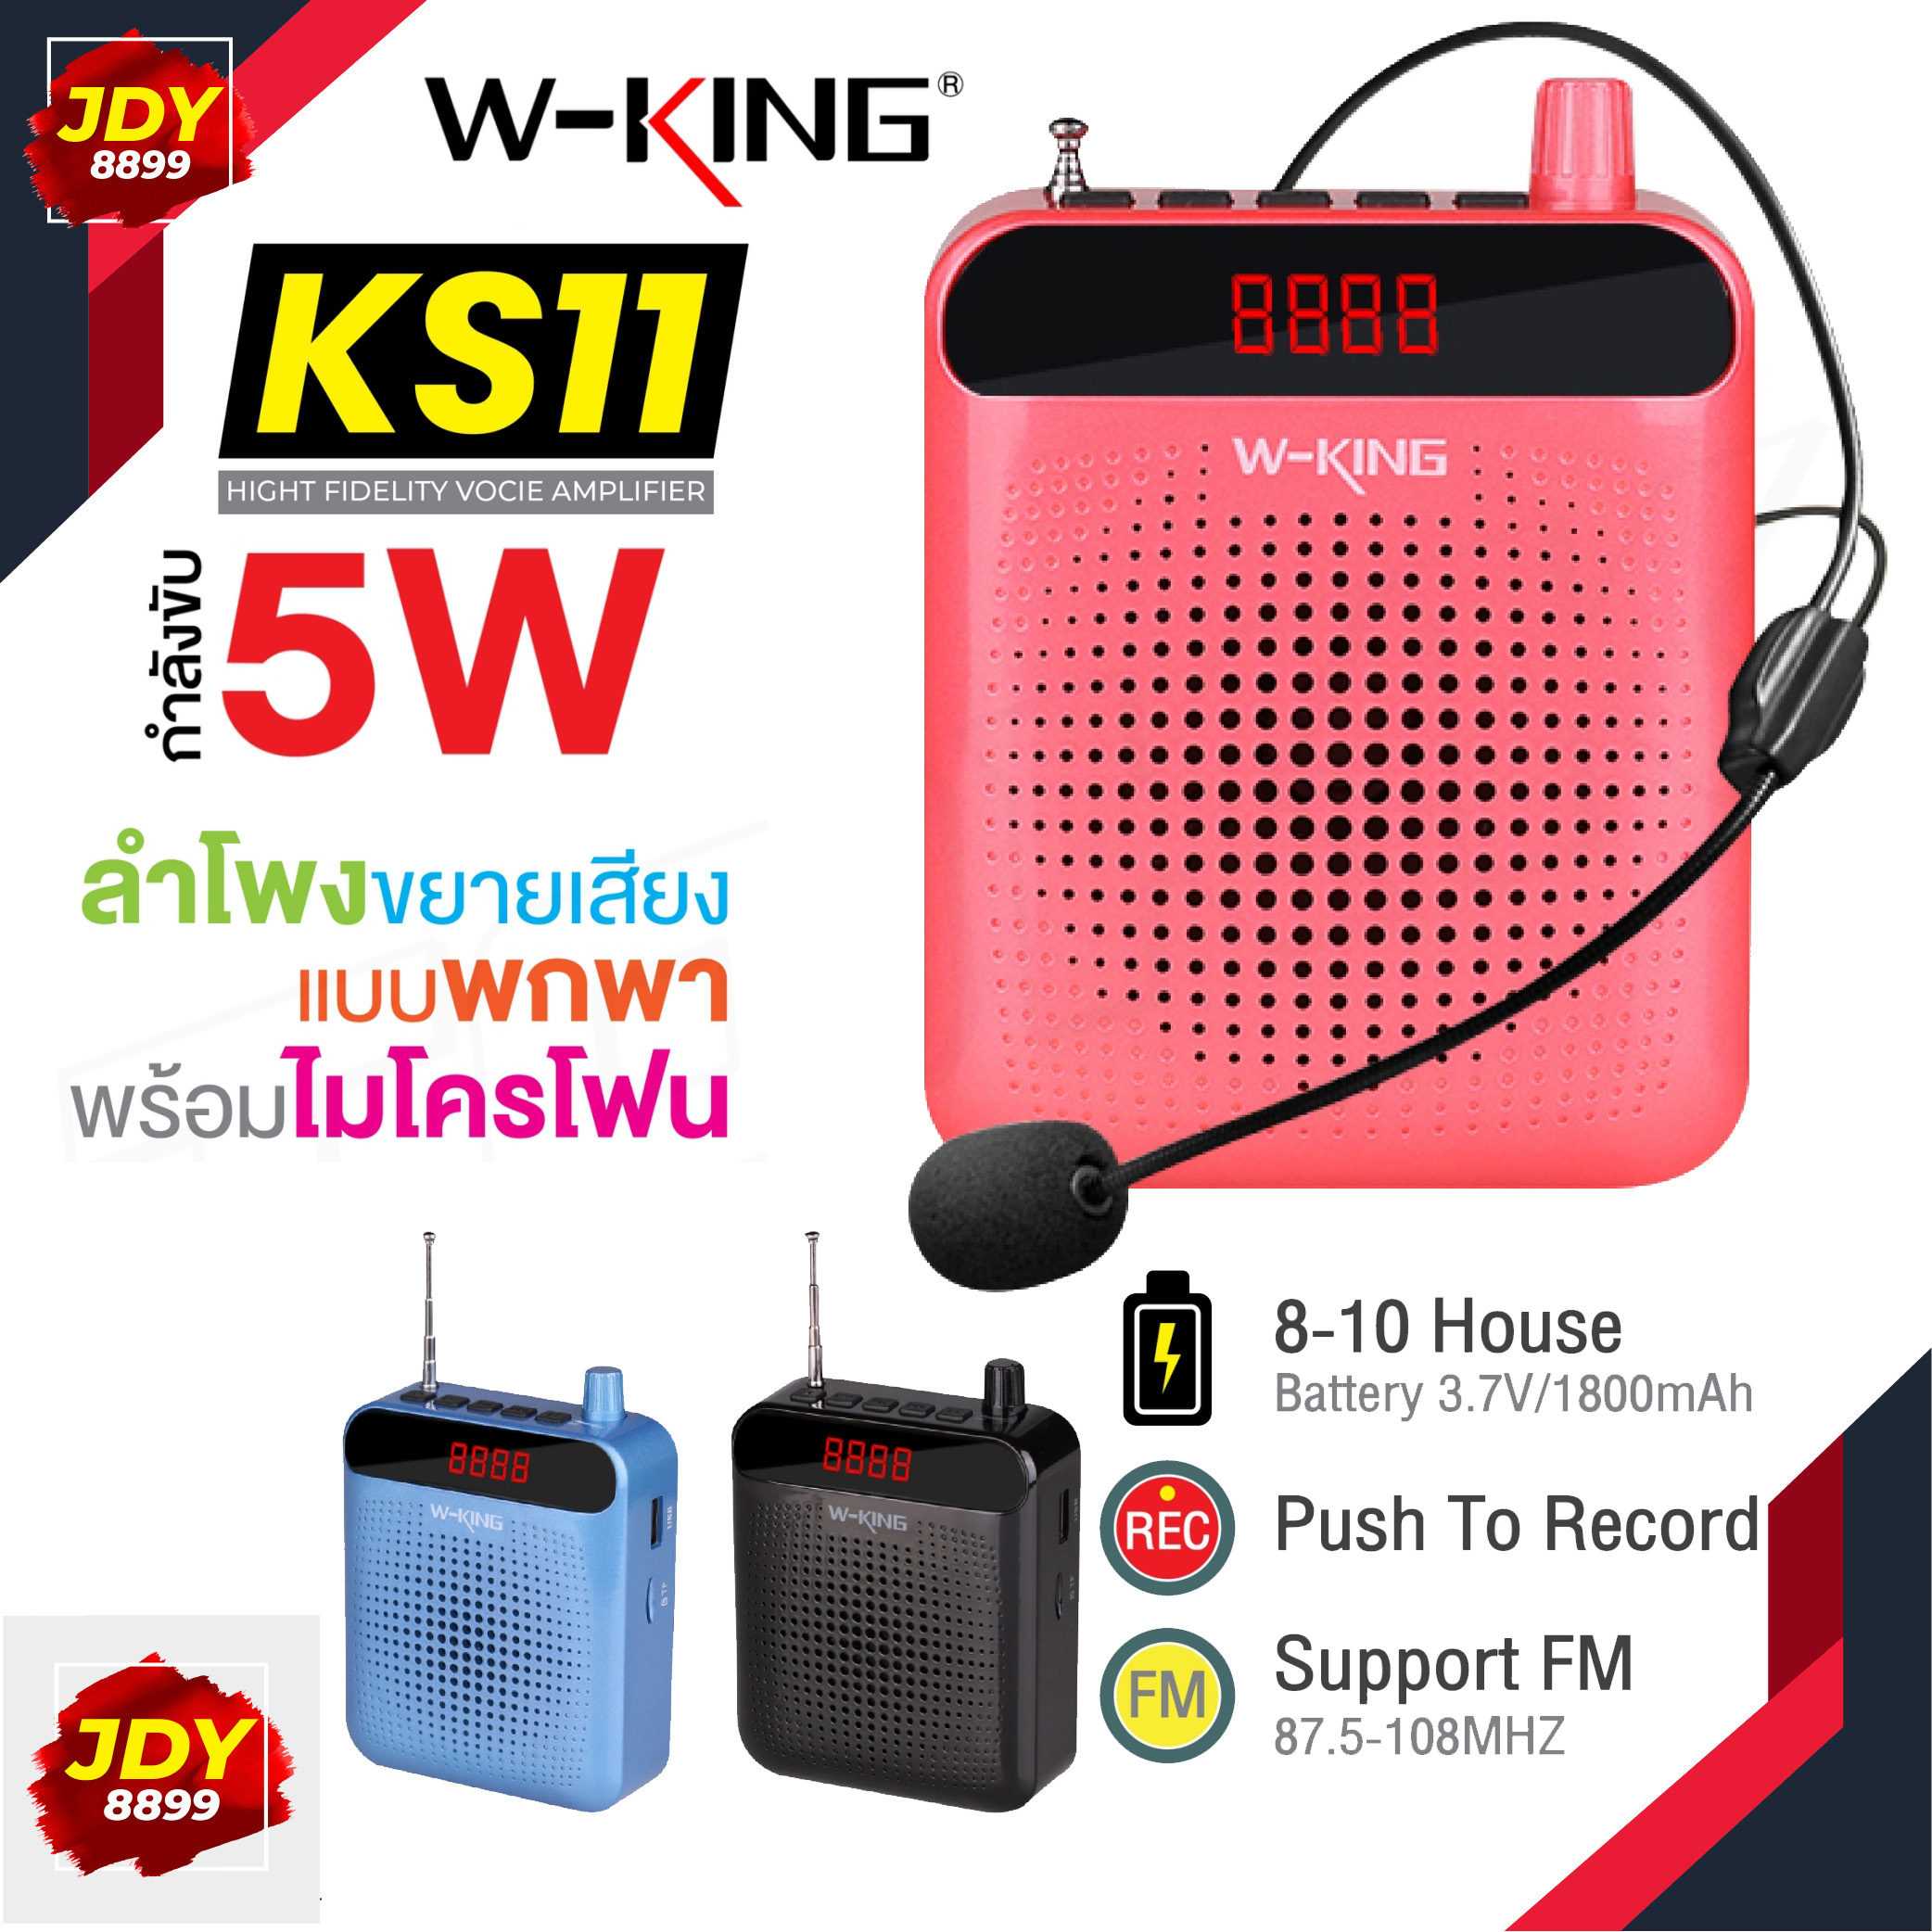 W-KING KS11 ลำโพง ของแท้ 100% ลำโพงไมค์ ลำโพกพกพา ขยายเสียงแบบพกพา พร้อมไมโครโฟน สินค้าใช้งานเหมือน KS12 JDY8899